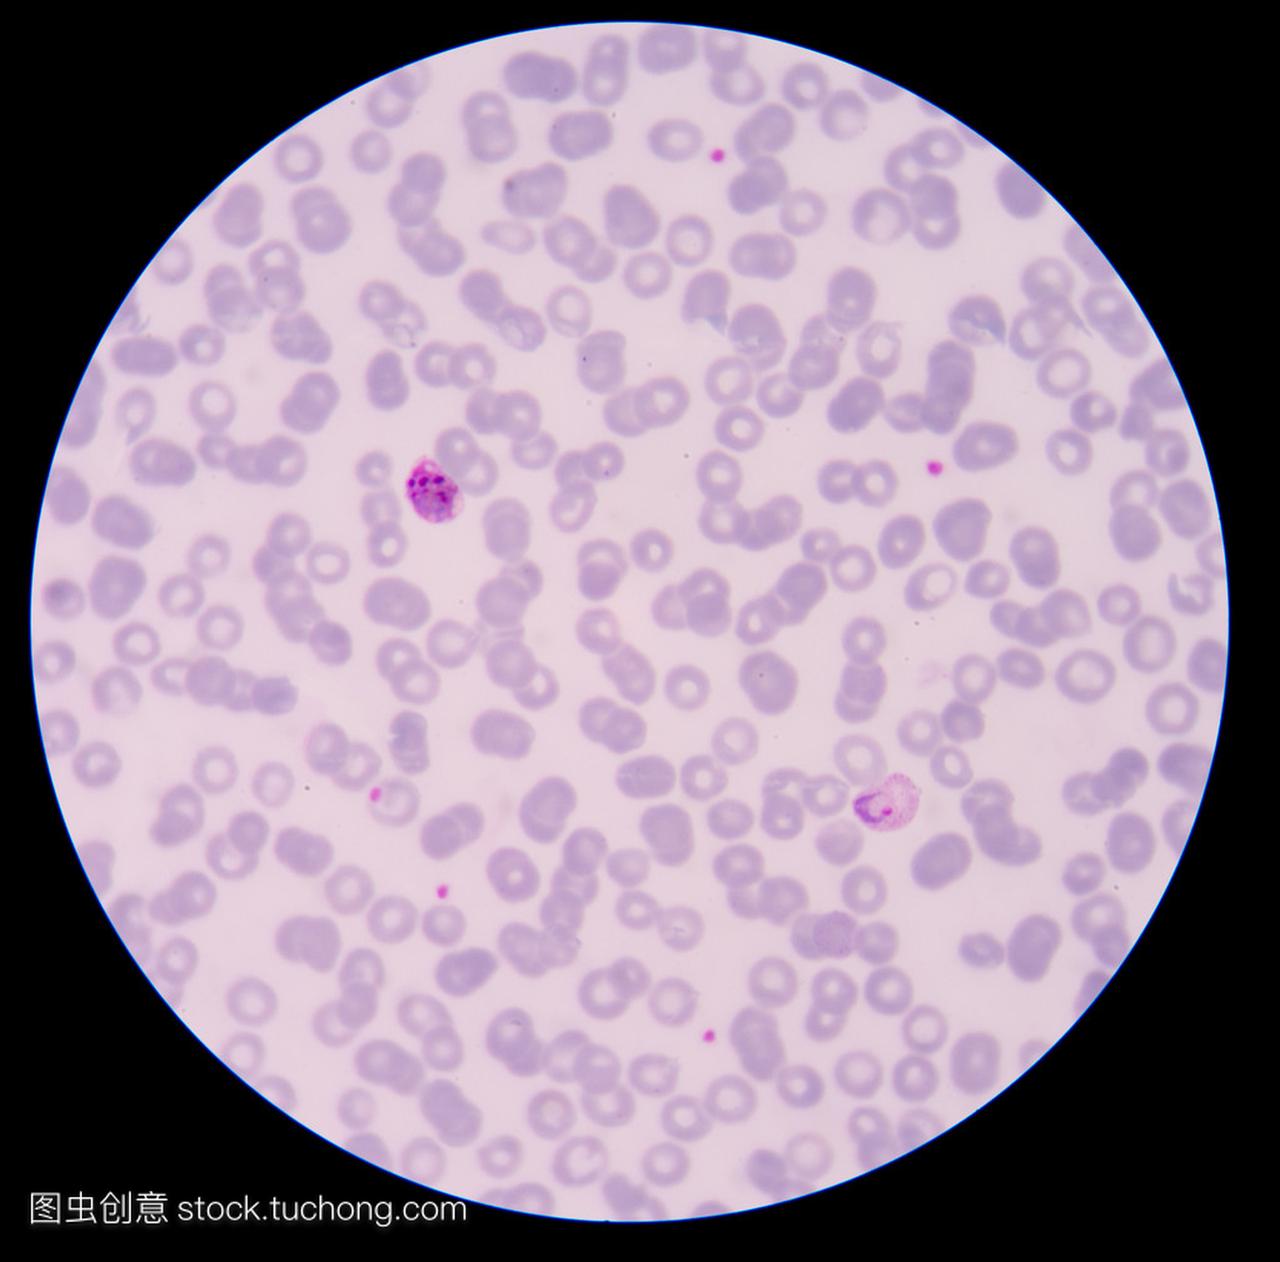 血液涂片薄膜疟疾寄生虫阳性